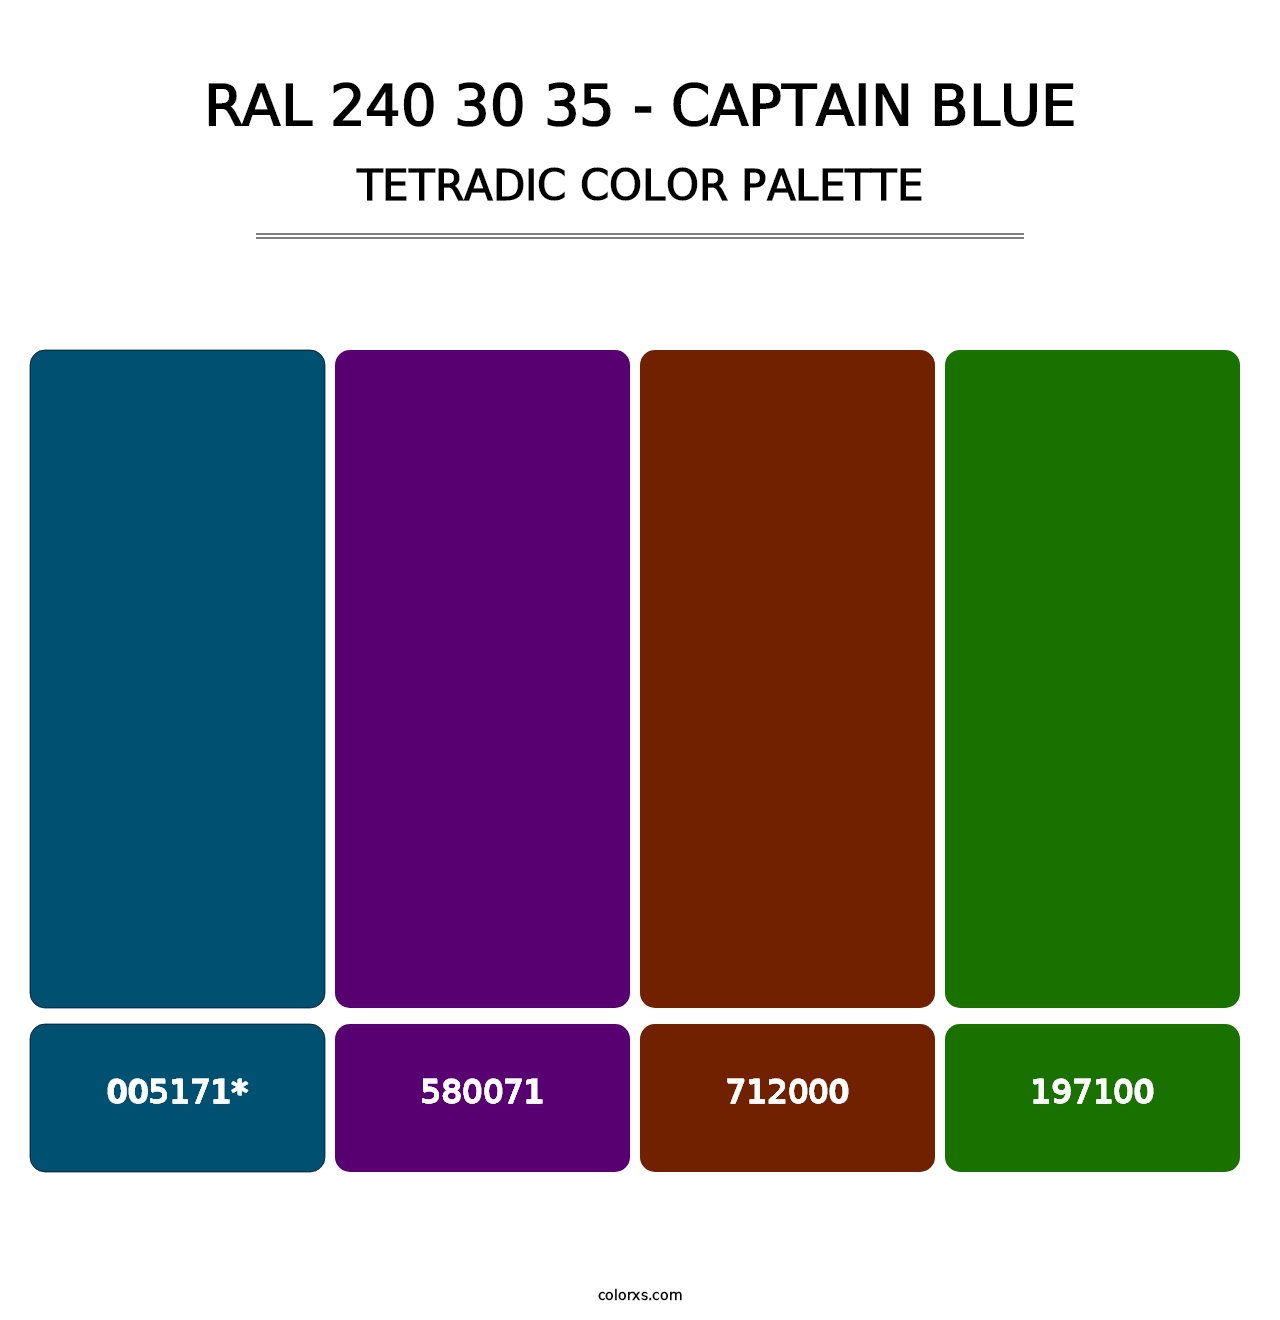 RAL 240 30 35 - Captain Blue - Tetradic Color Palette